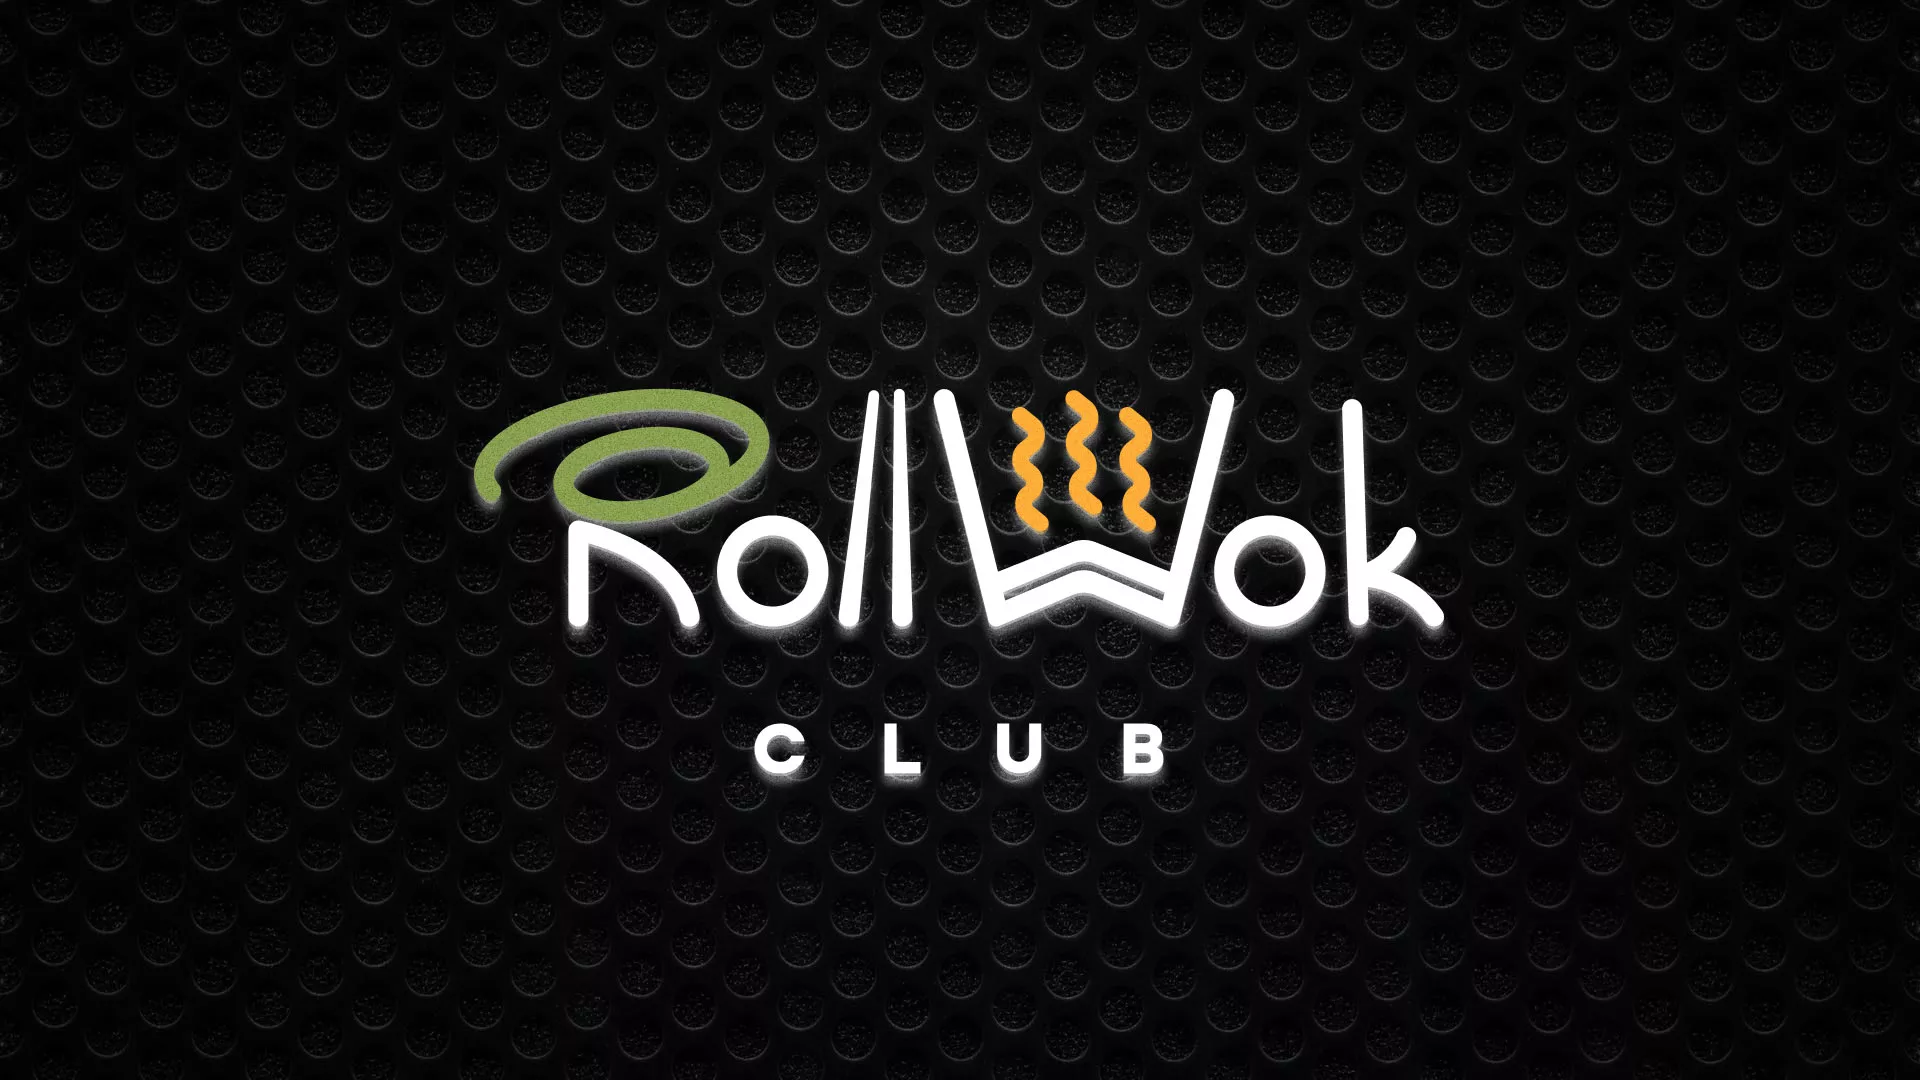 Брендирование торговых точек суши-бара «Roll Wok Club» в Себеже